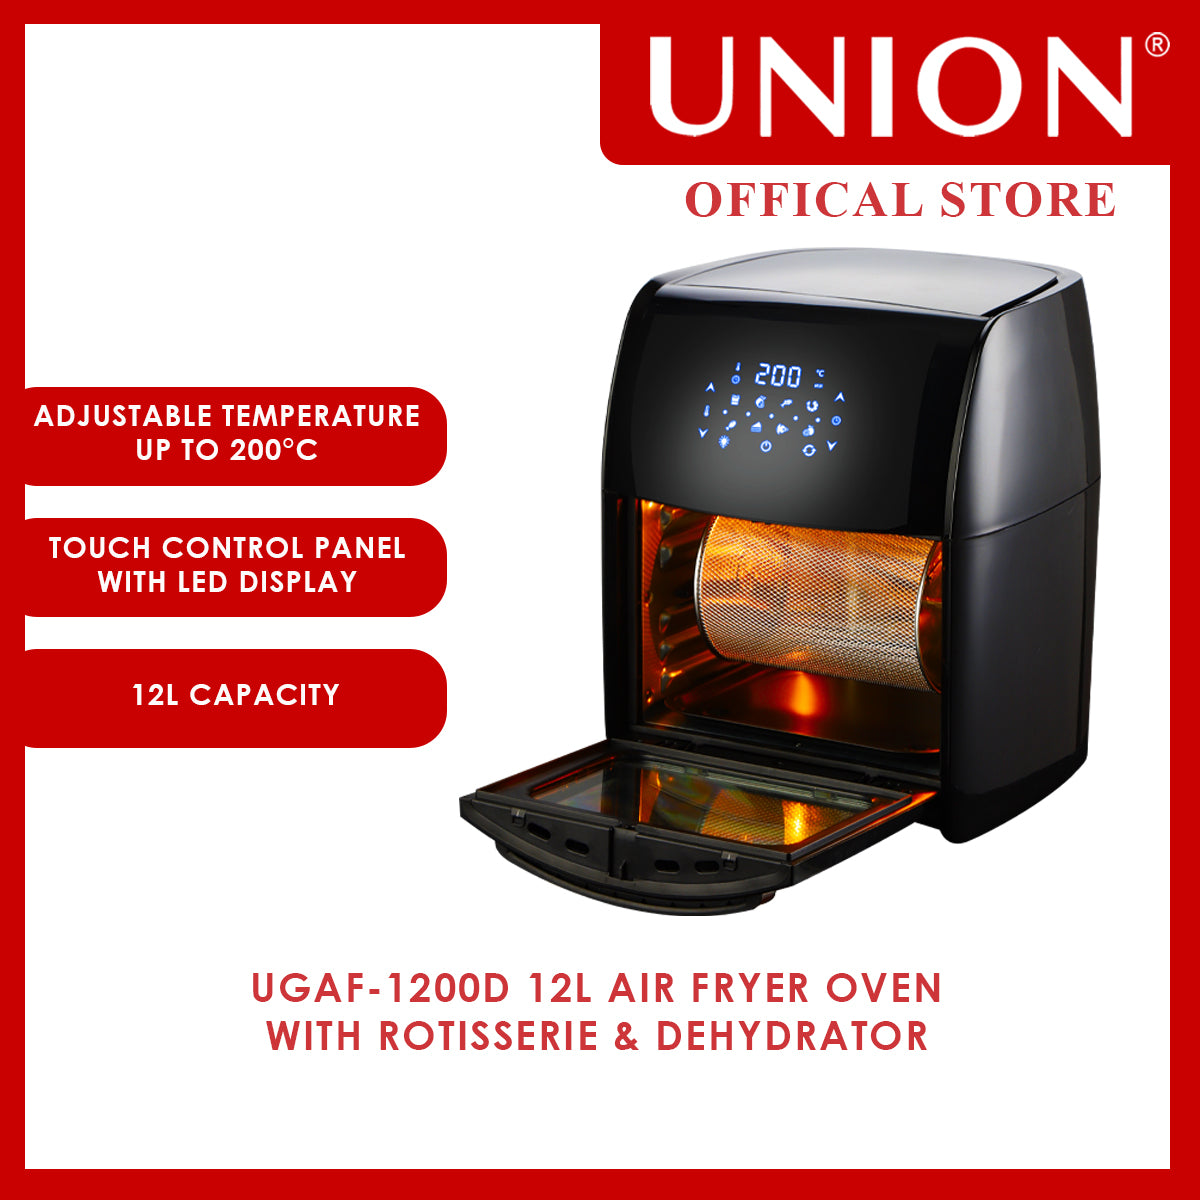 Union® 12L Air Fryer Oven